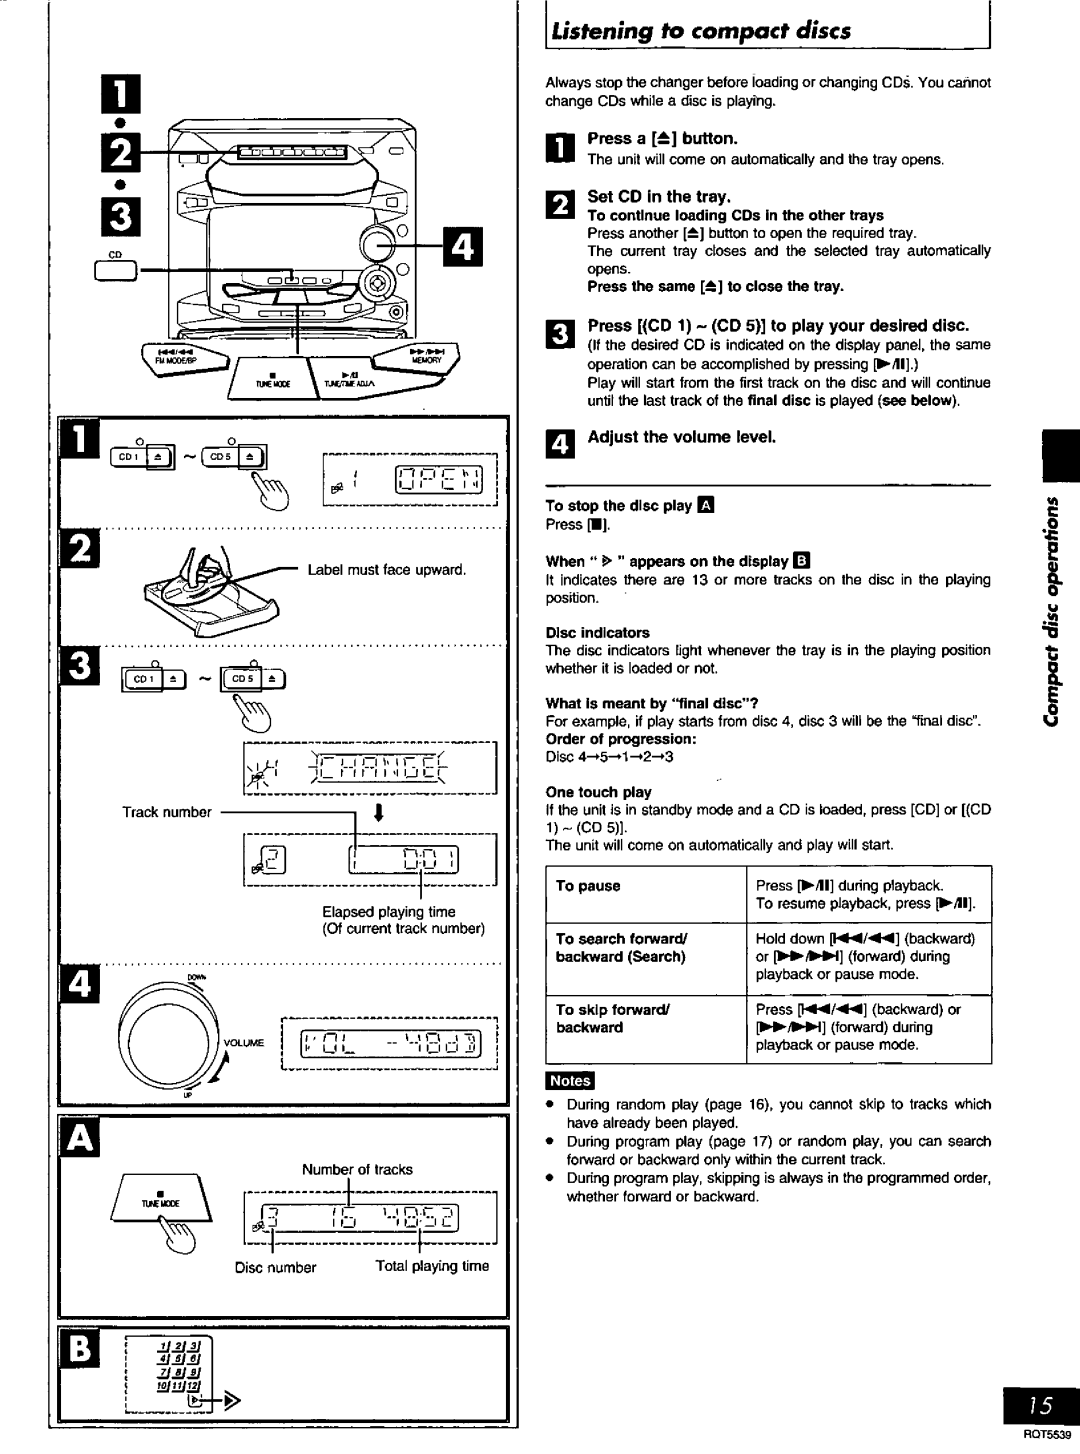 Panasonic SC-AK14 manual 